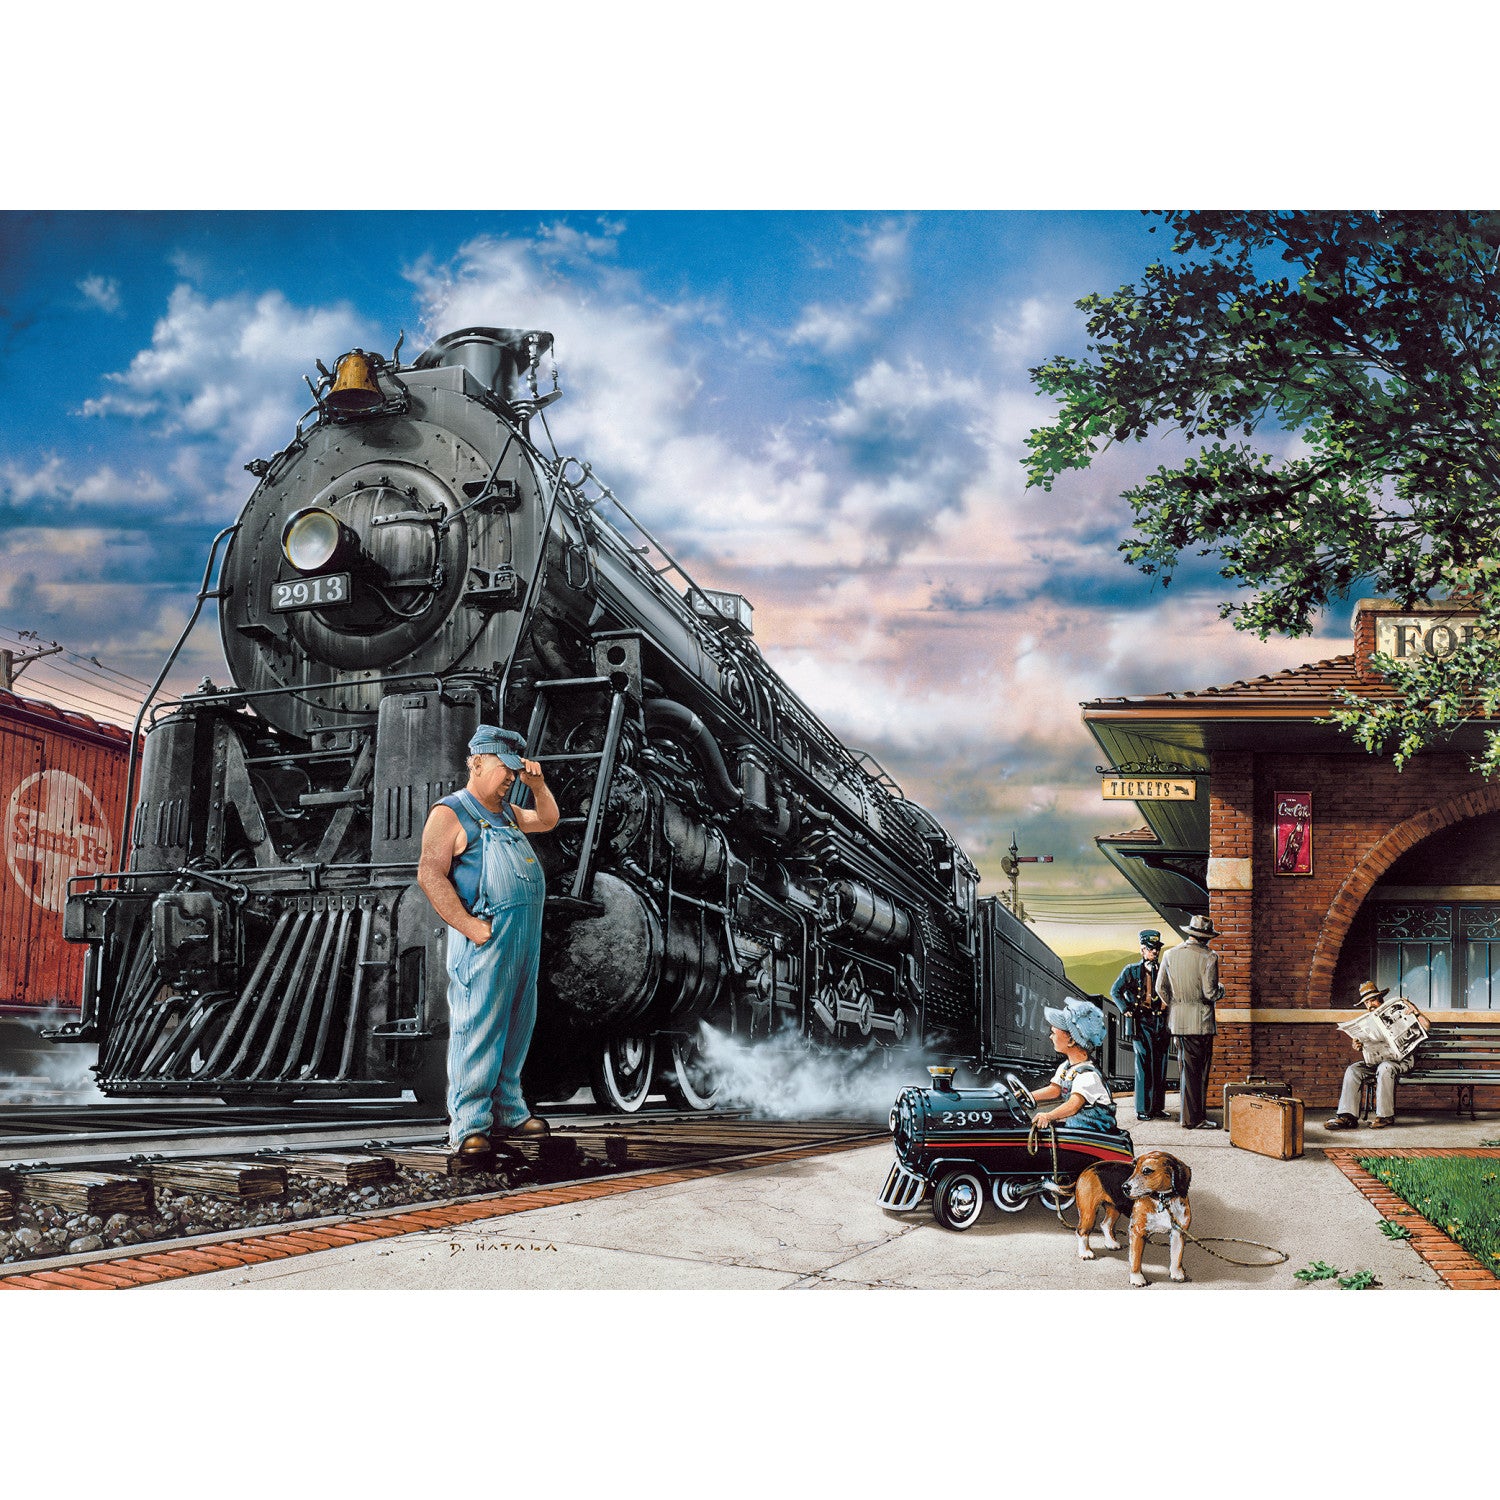 Childhood Dreams - Railway Dreams 1000 Piece Puzzle